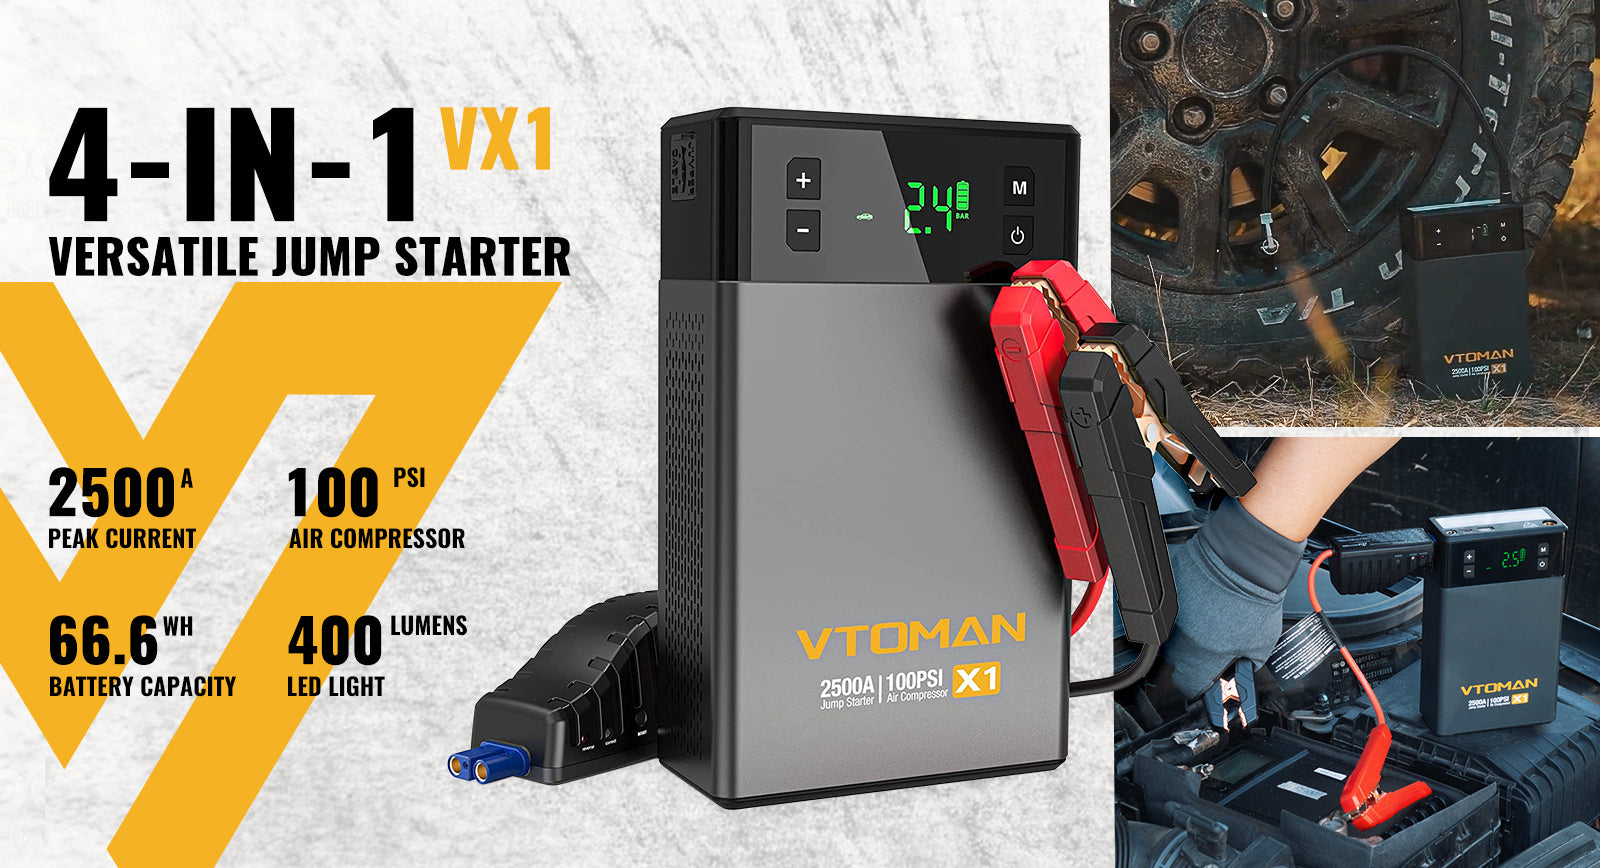 vx1 jump starter power bank with air compressor 100psi 2500a